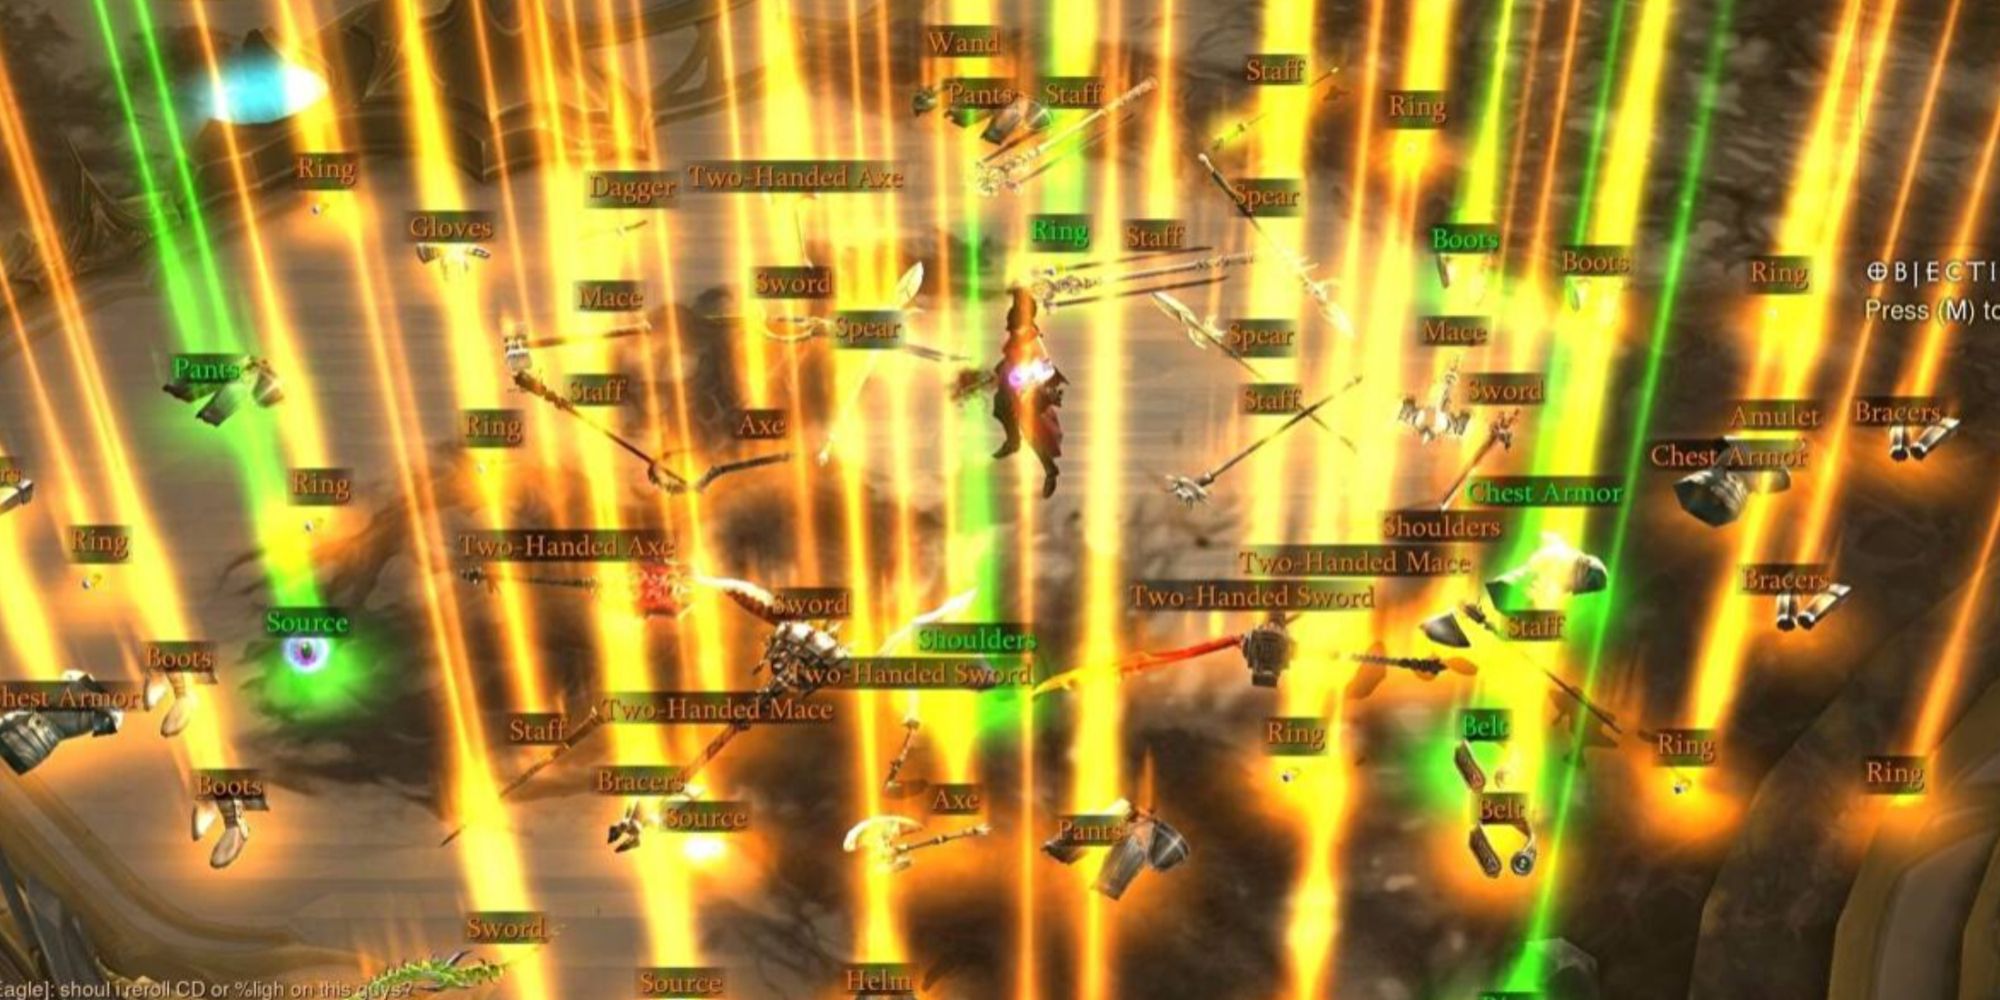 Diablo 3 Loot Drops were huge and full of junk loot